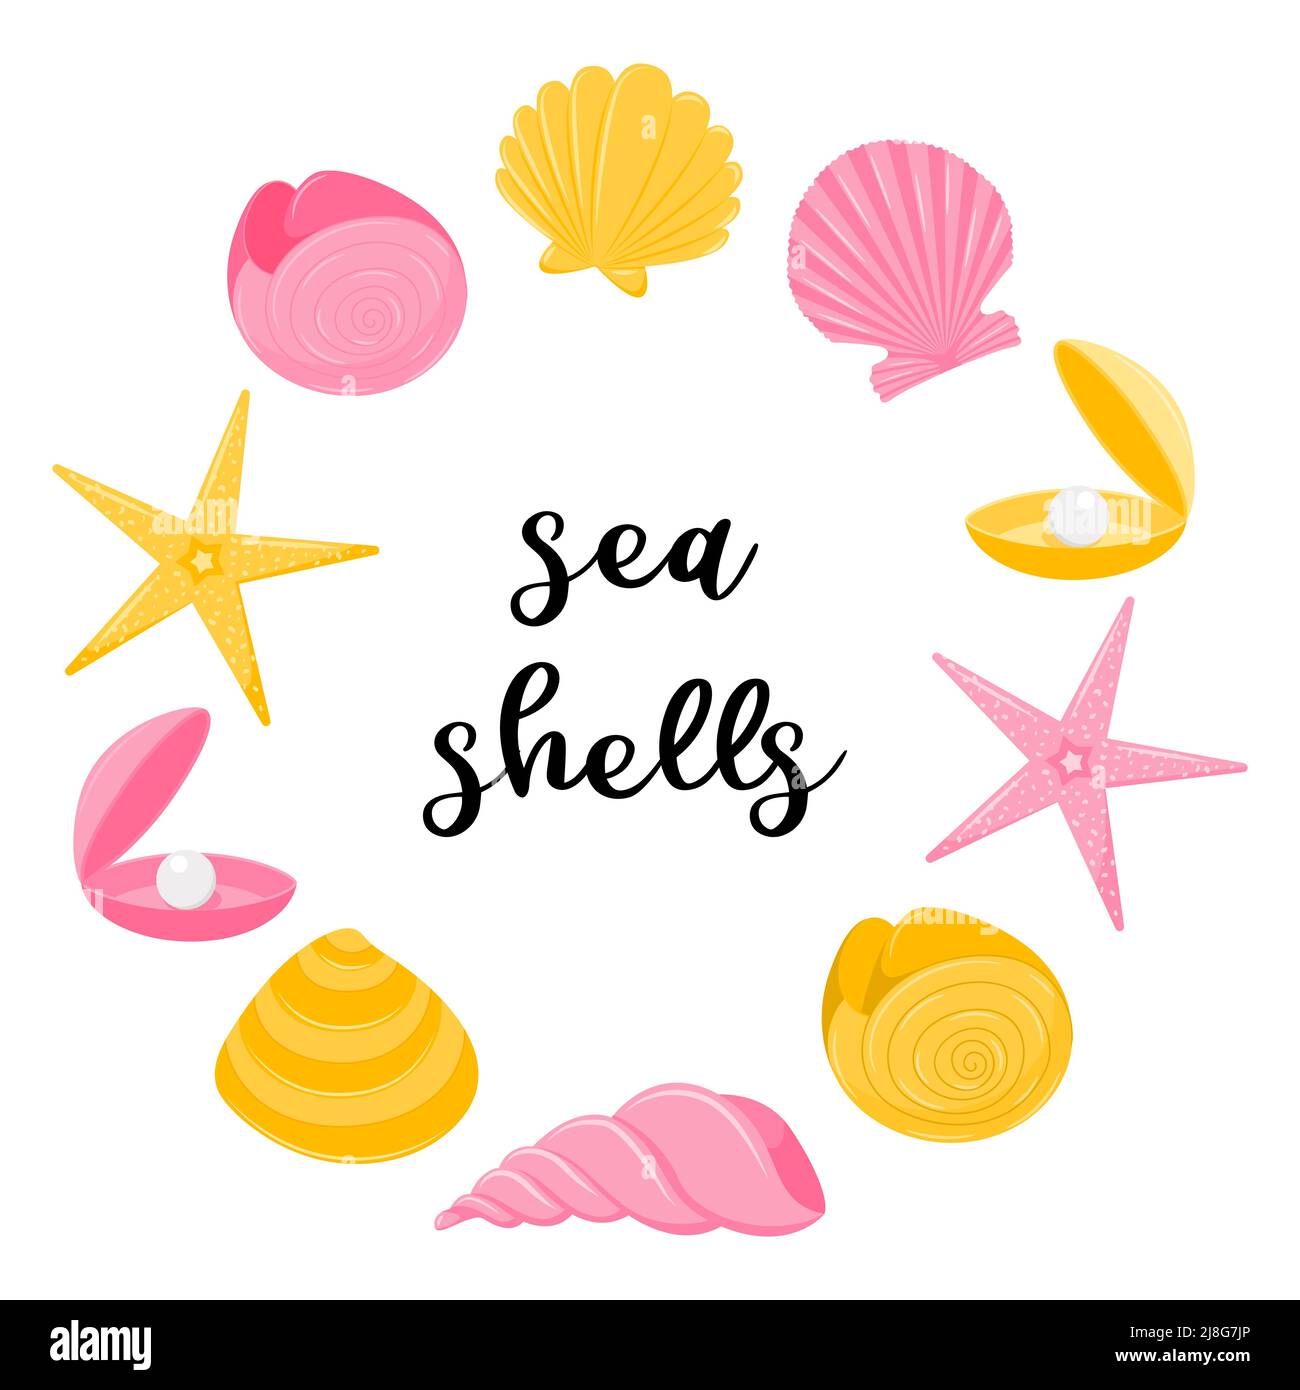 Cadre rond rose-jaune d'animaux aquatiques marins, coquillages en spirale, nautilus, étoiles de mer, palourdes. Style dessin animé plat. Illustrations vectorielles isolées sur Illustration de Vecteur